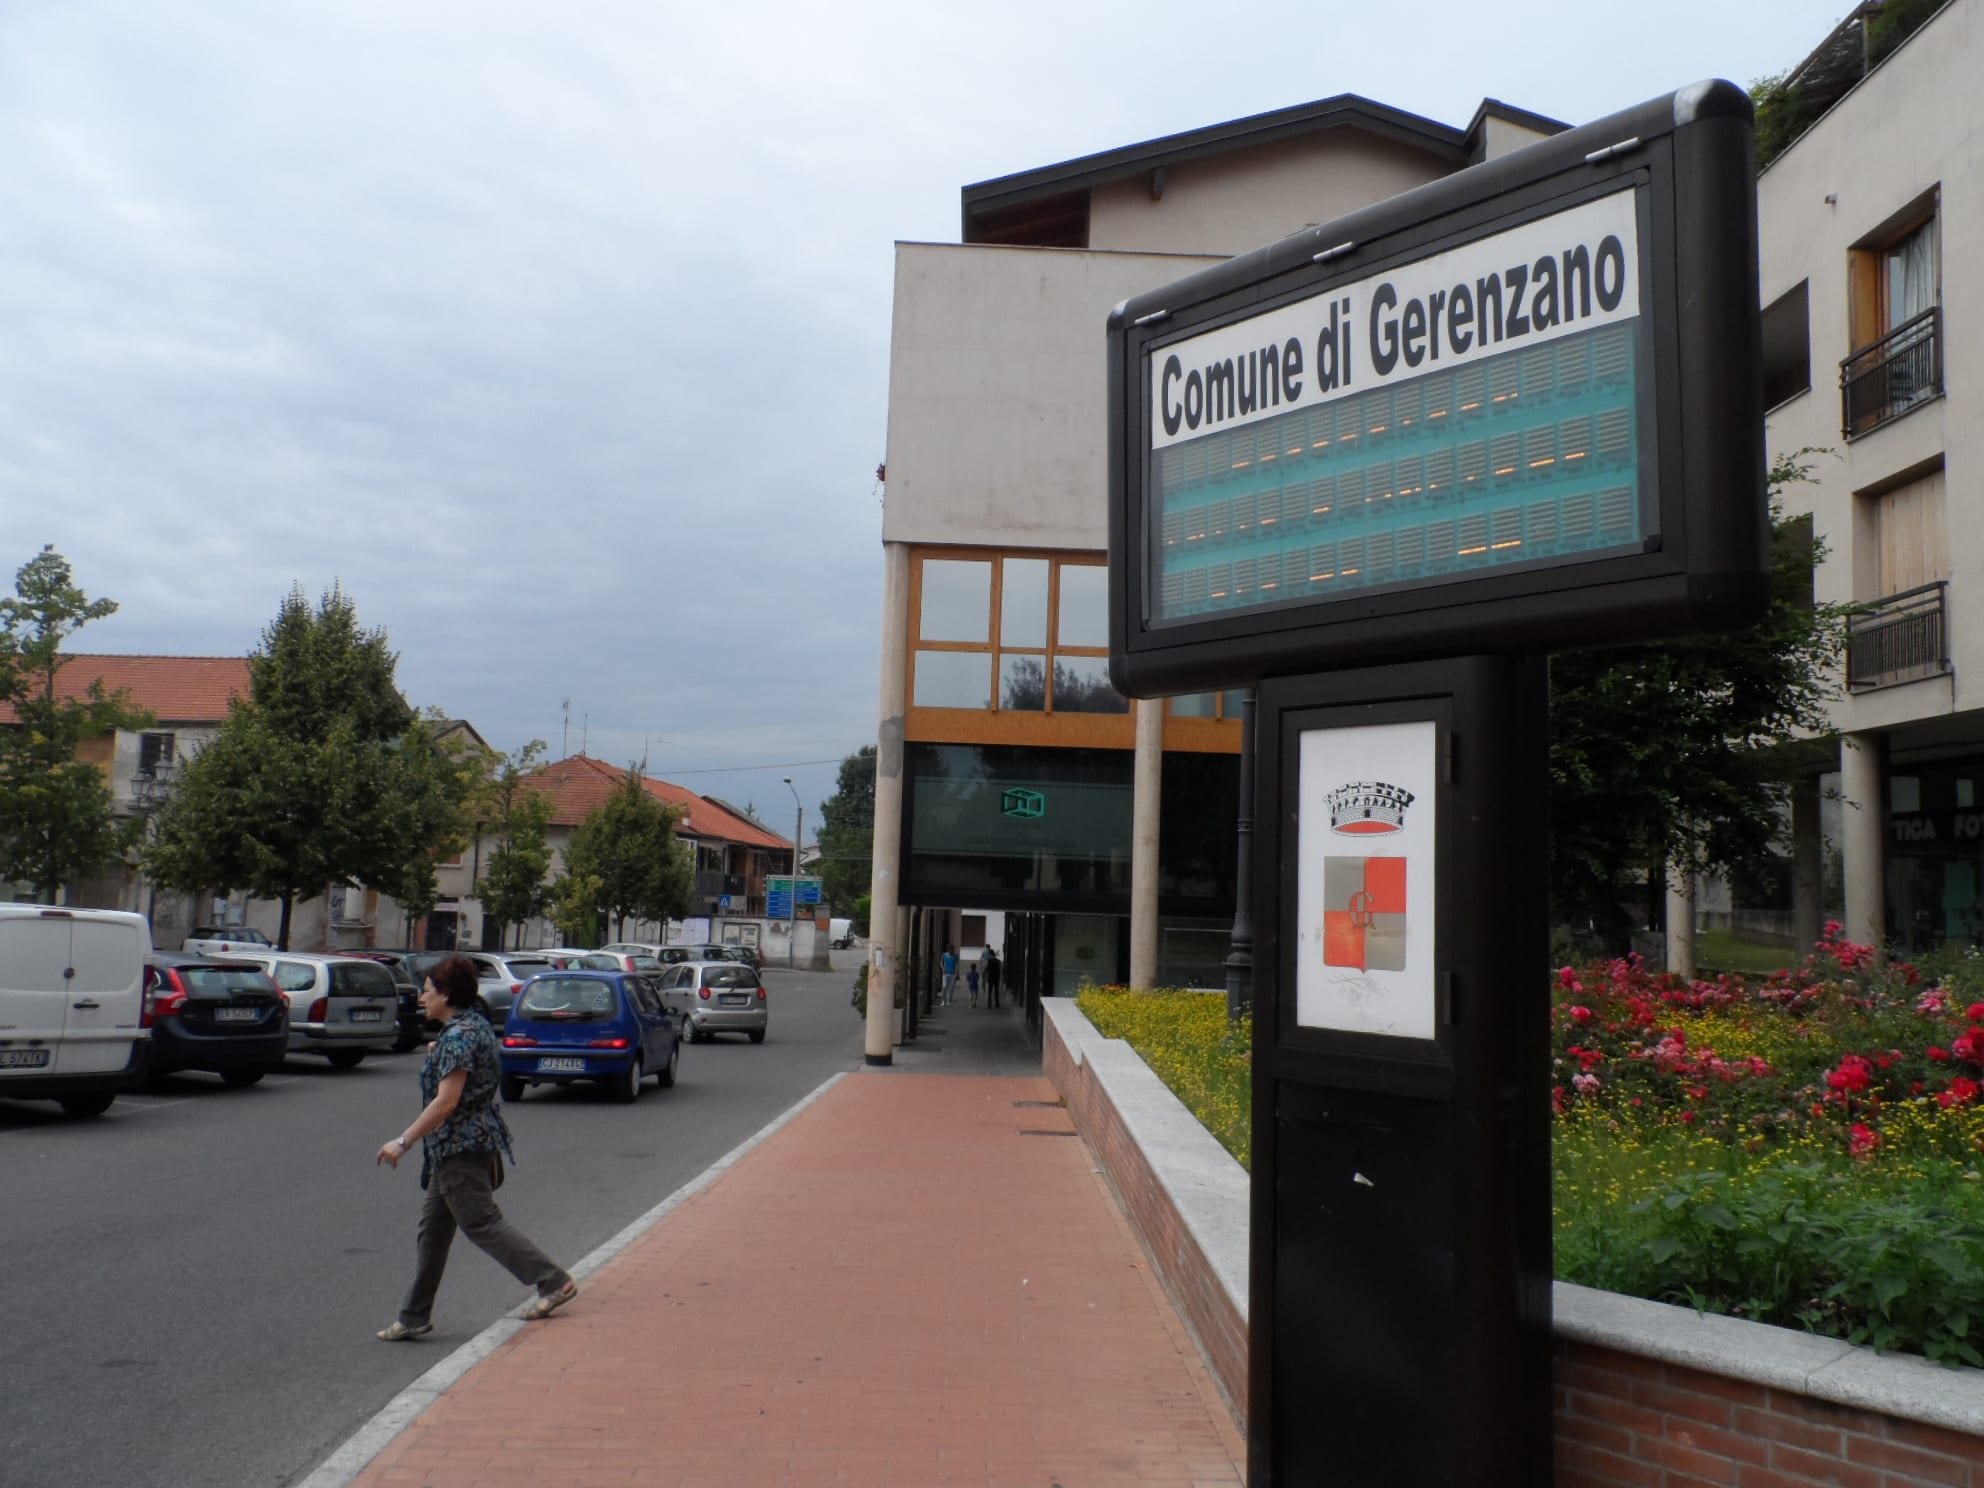 Allarme furti a Gerenzano: previsti più controlli